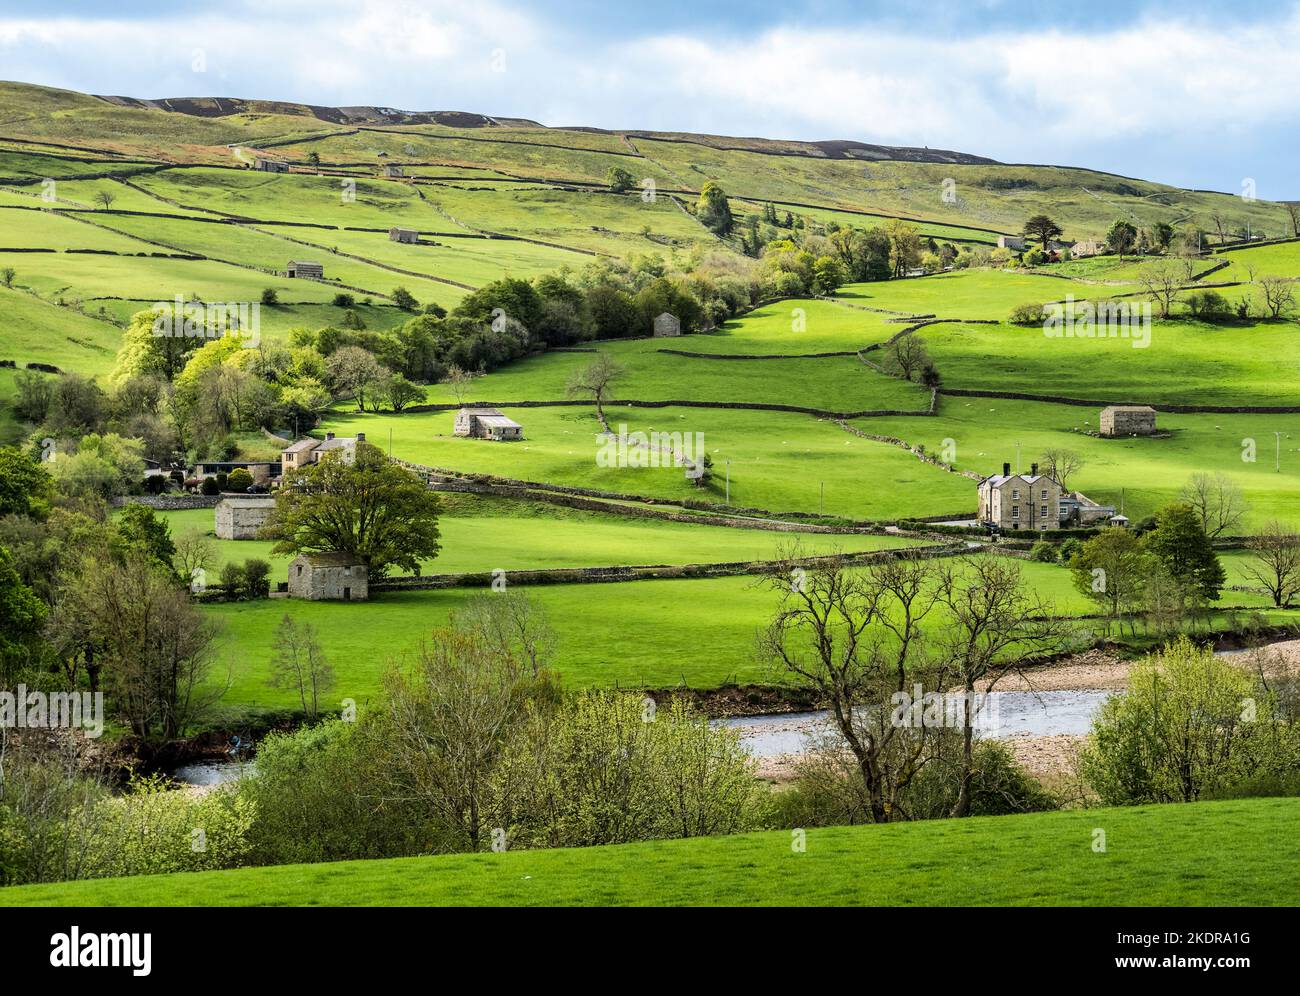 Pays agricole typique de Yorkshire Dales à Swaledale, avec des murs en pierre sèche et des granges en pierre, vu au printemps. Banque D'Images